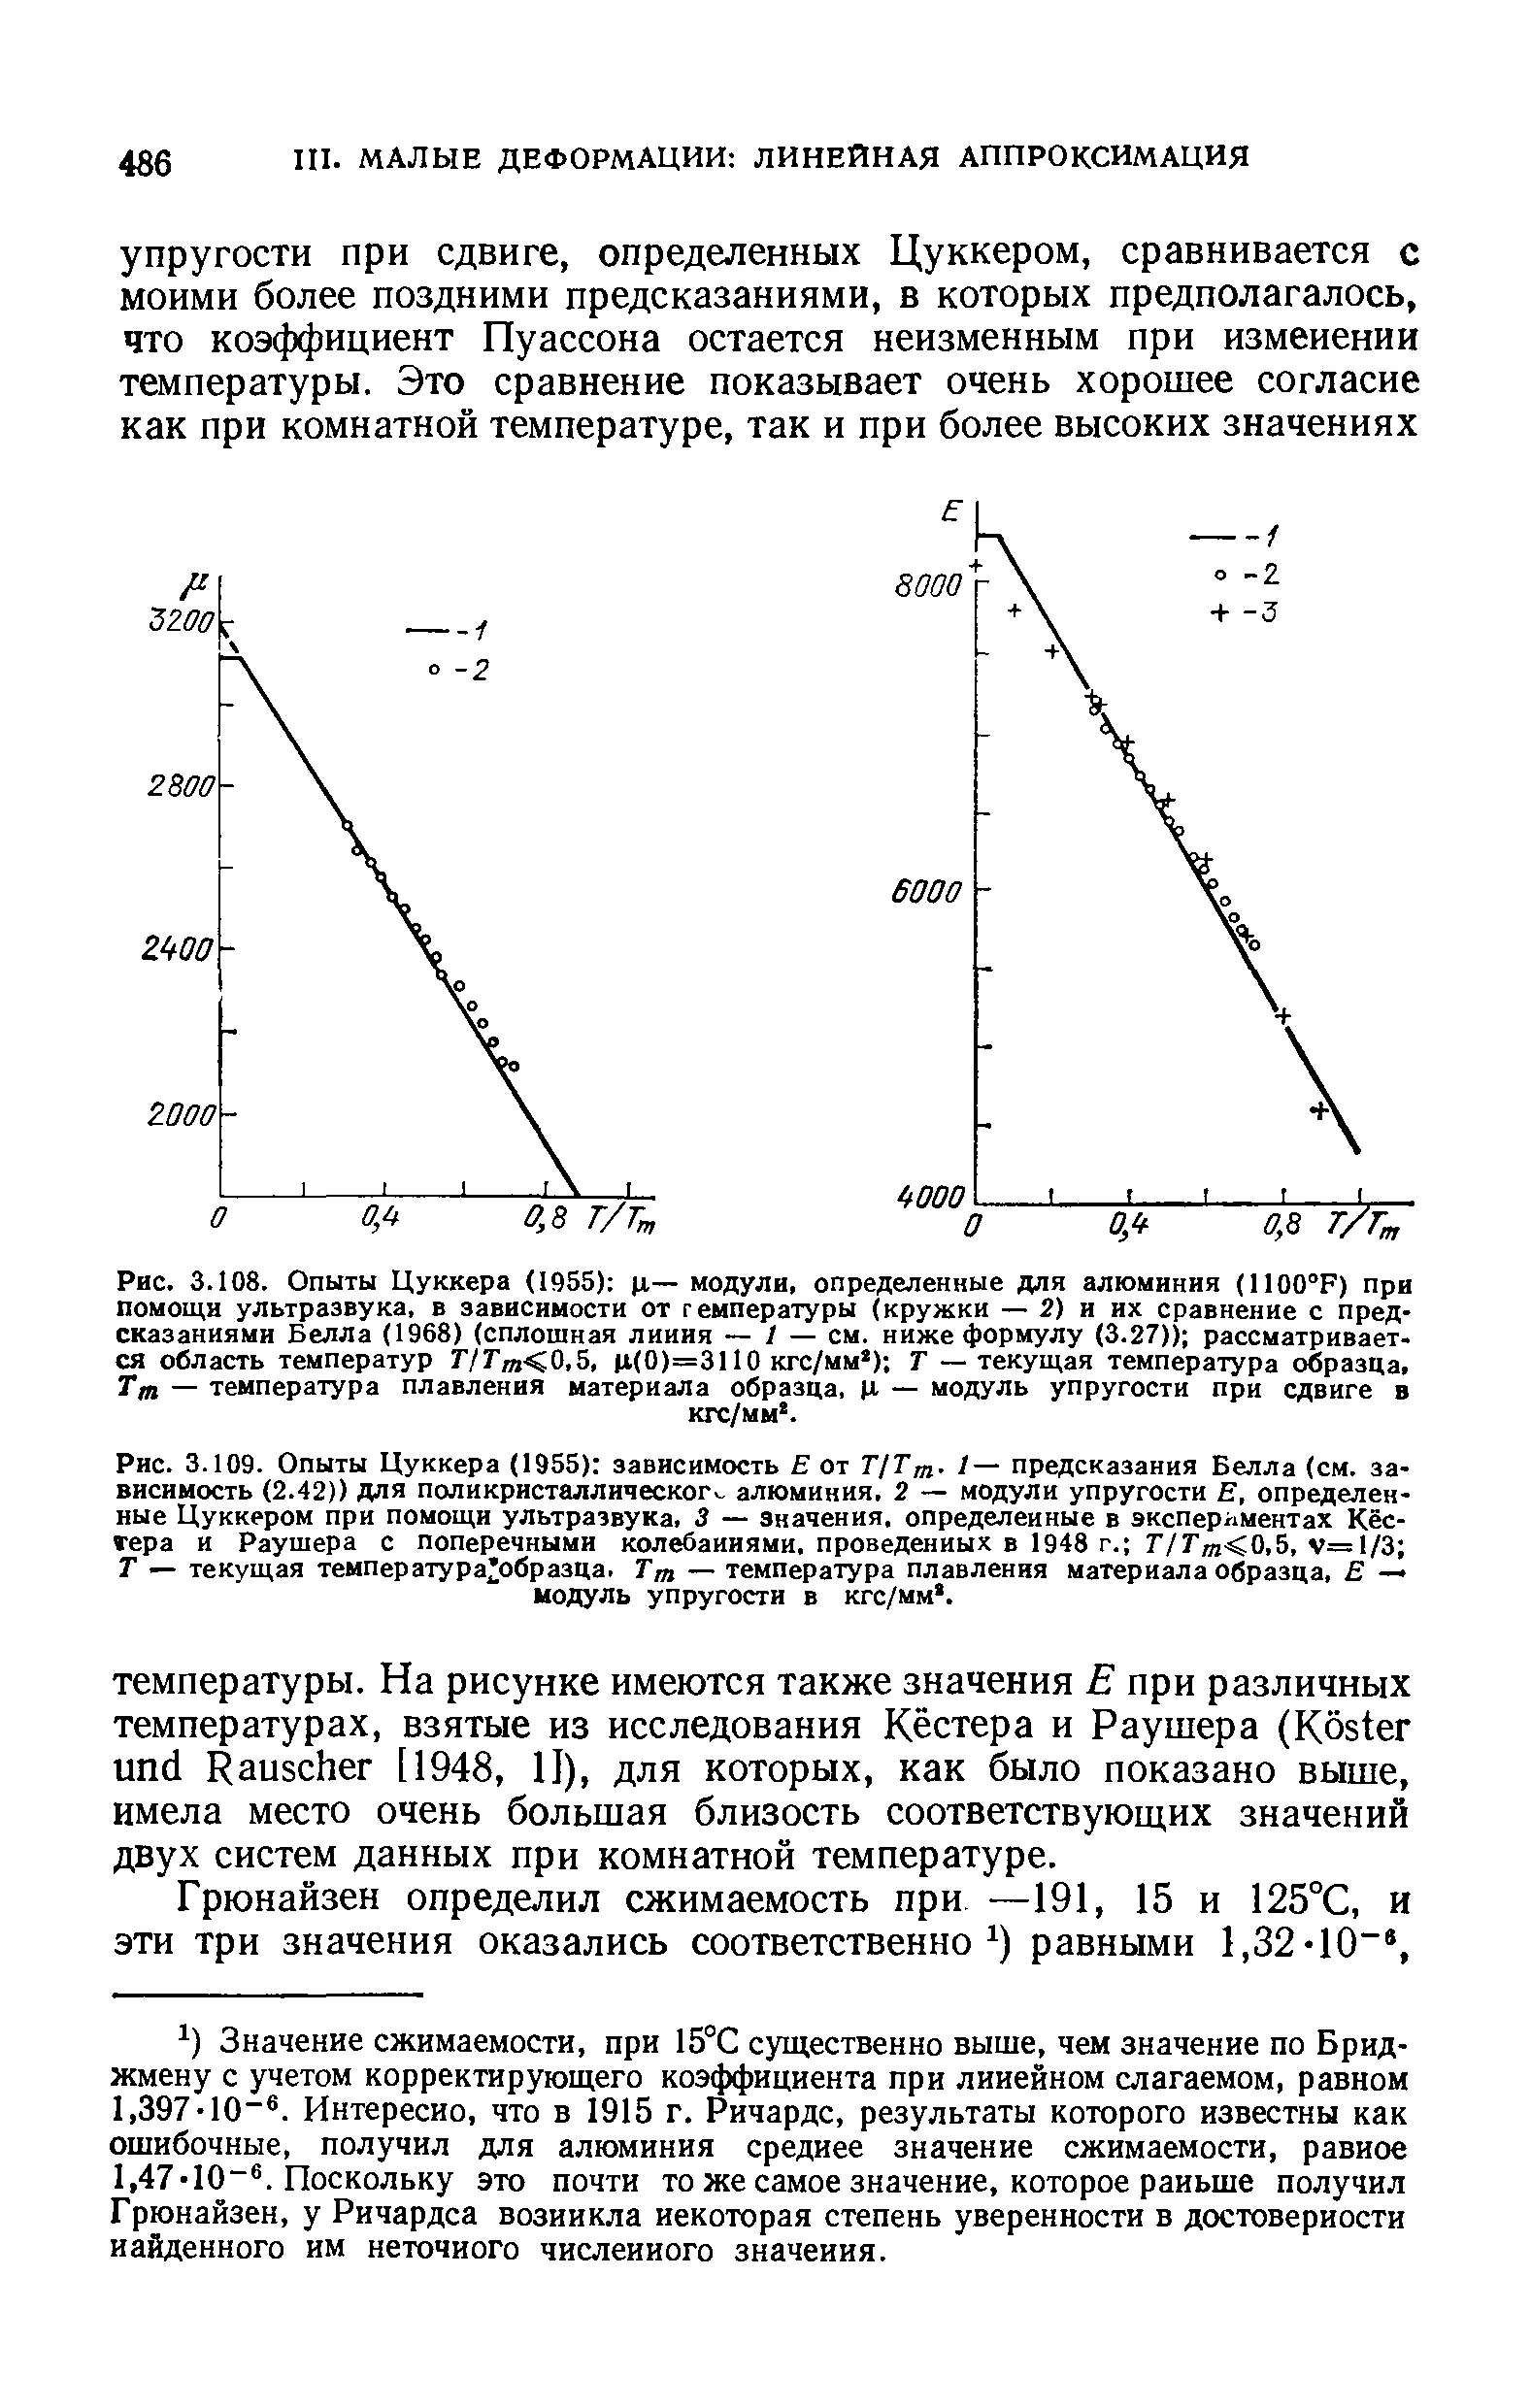 Рис. 3.109. Опыты Цуккера (1955) зависимость Е от Г/Г . /— предсказания Белла (см. зависимость (2.42)) для поликристаллическог . алюминия, 2 — <a href="/info/487">модули упругости</a> Е, определенные Цуккером при помощи ультразвука, 3 — значения, определенные в экспериментах Кестера и Раушера с <a href="/info/23934">поперечными колебаниями</a>, проведенных в 1948 г. Г/Гт<0,5, v= 1/3 Т — текущая температура образца. Тт — <a href="/info/32063">температура плавления</a> материала образца, — модуль упругости в кгс/мм. 
